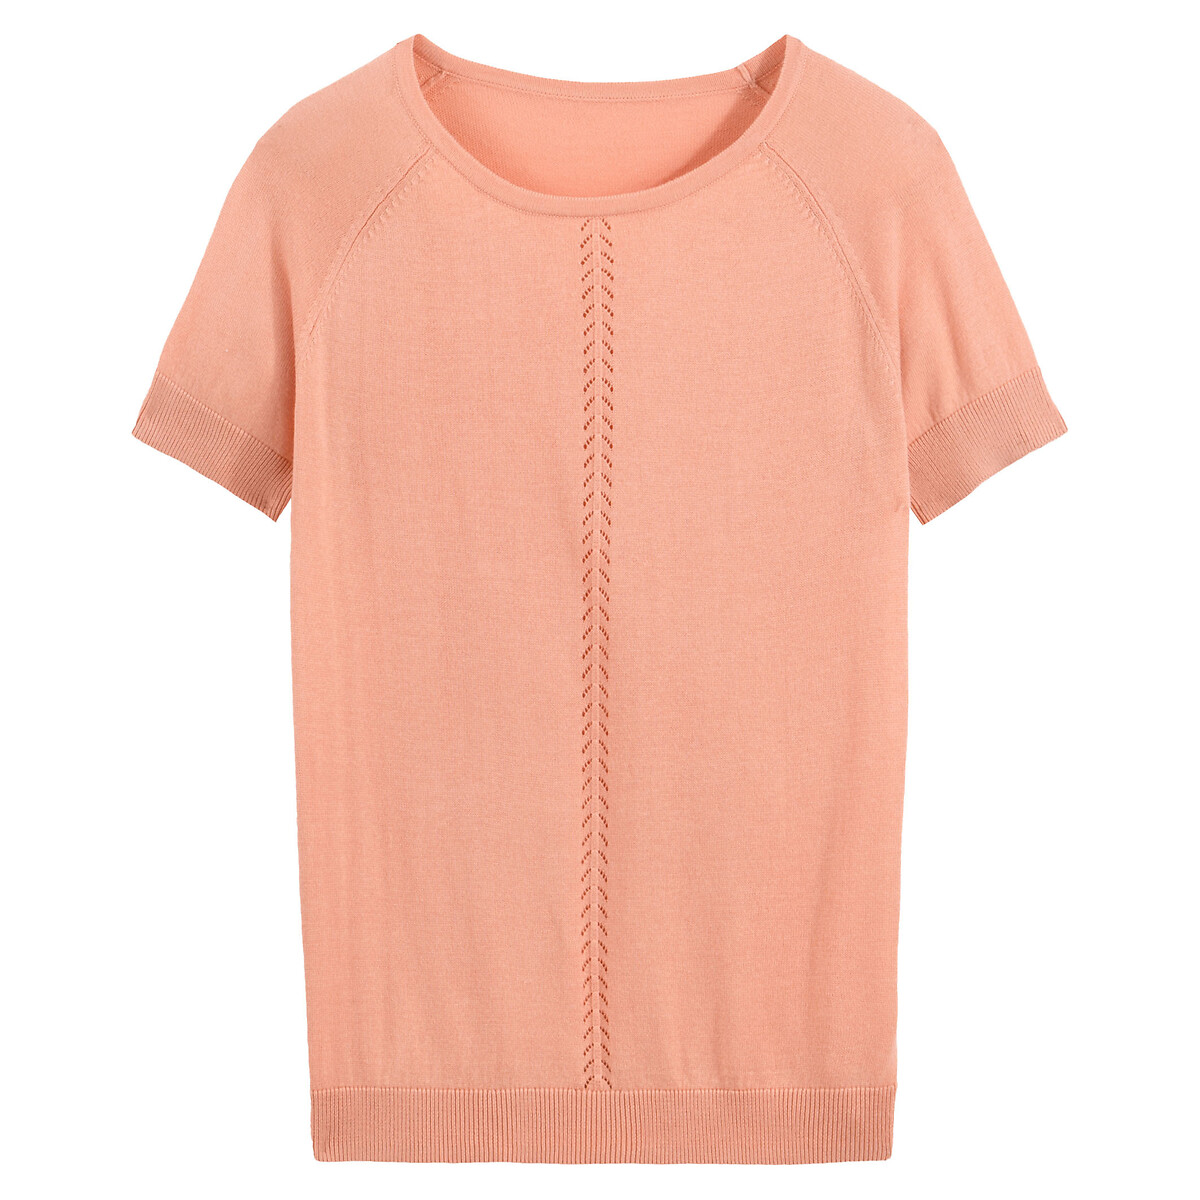 Пуловер La Redoute С короткими рукавами из тонкого трикотажа S розовый, размер S - фото 5